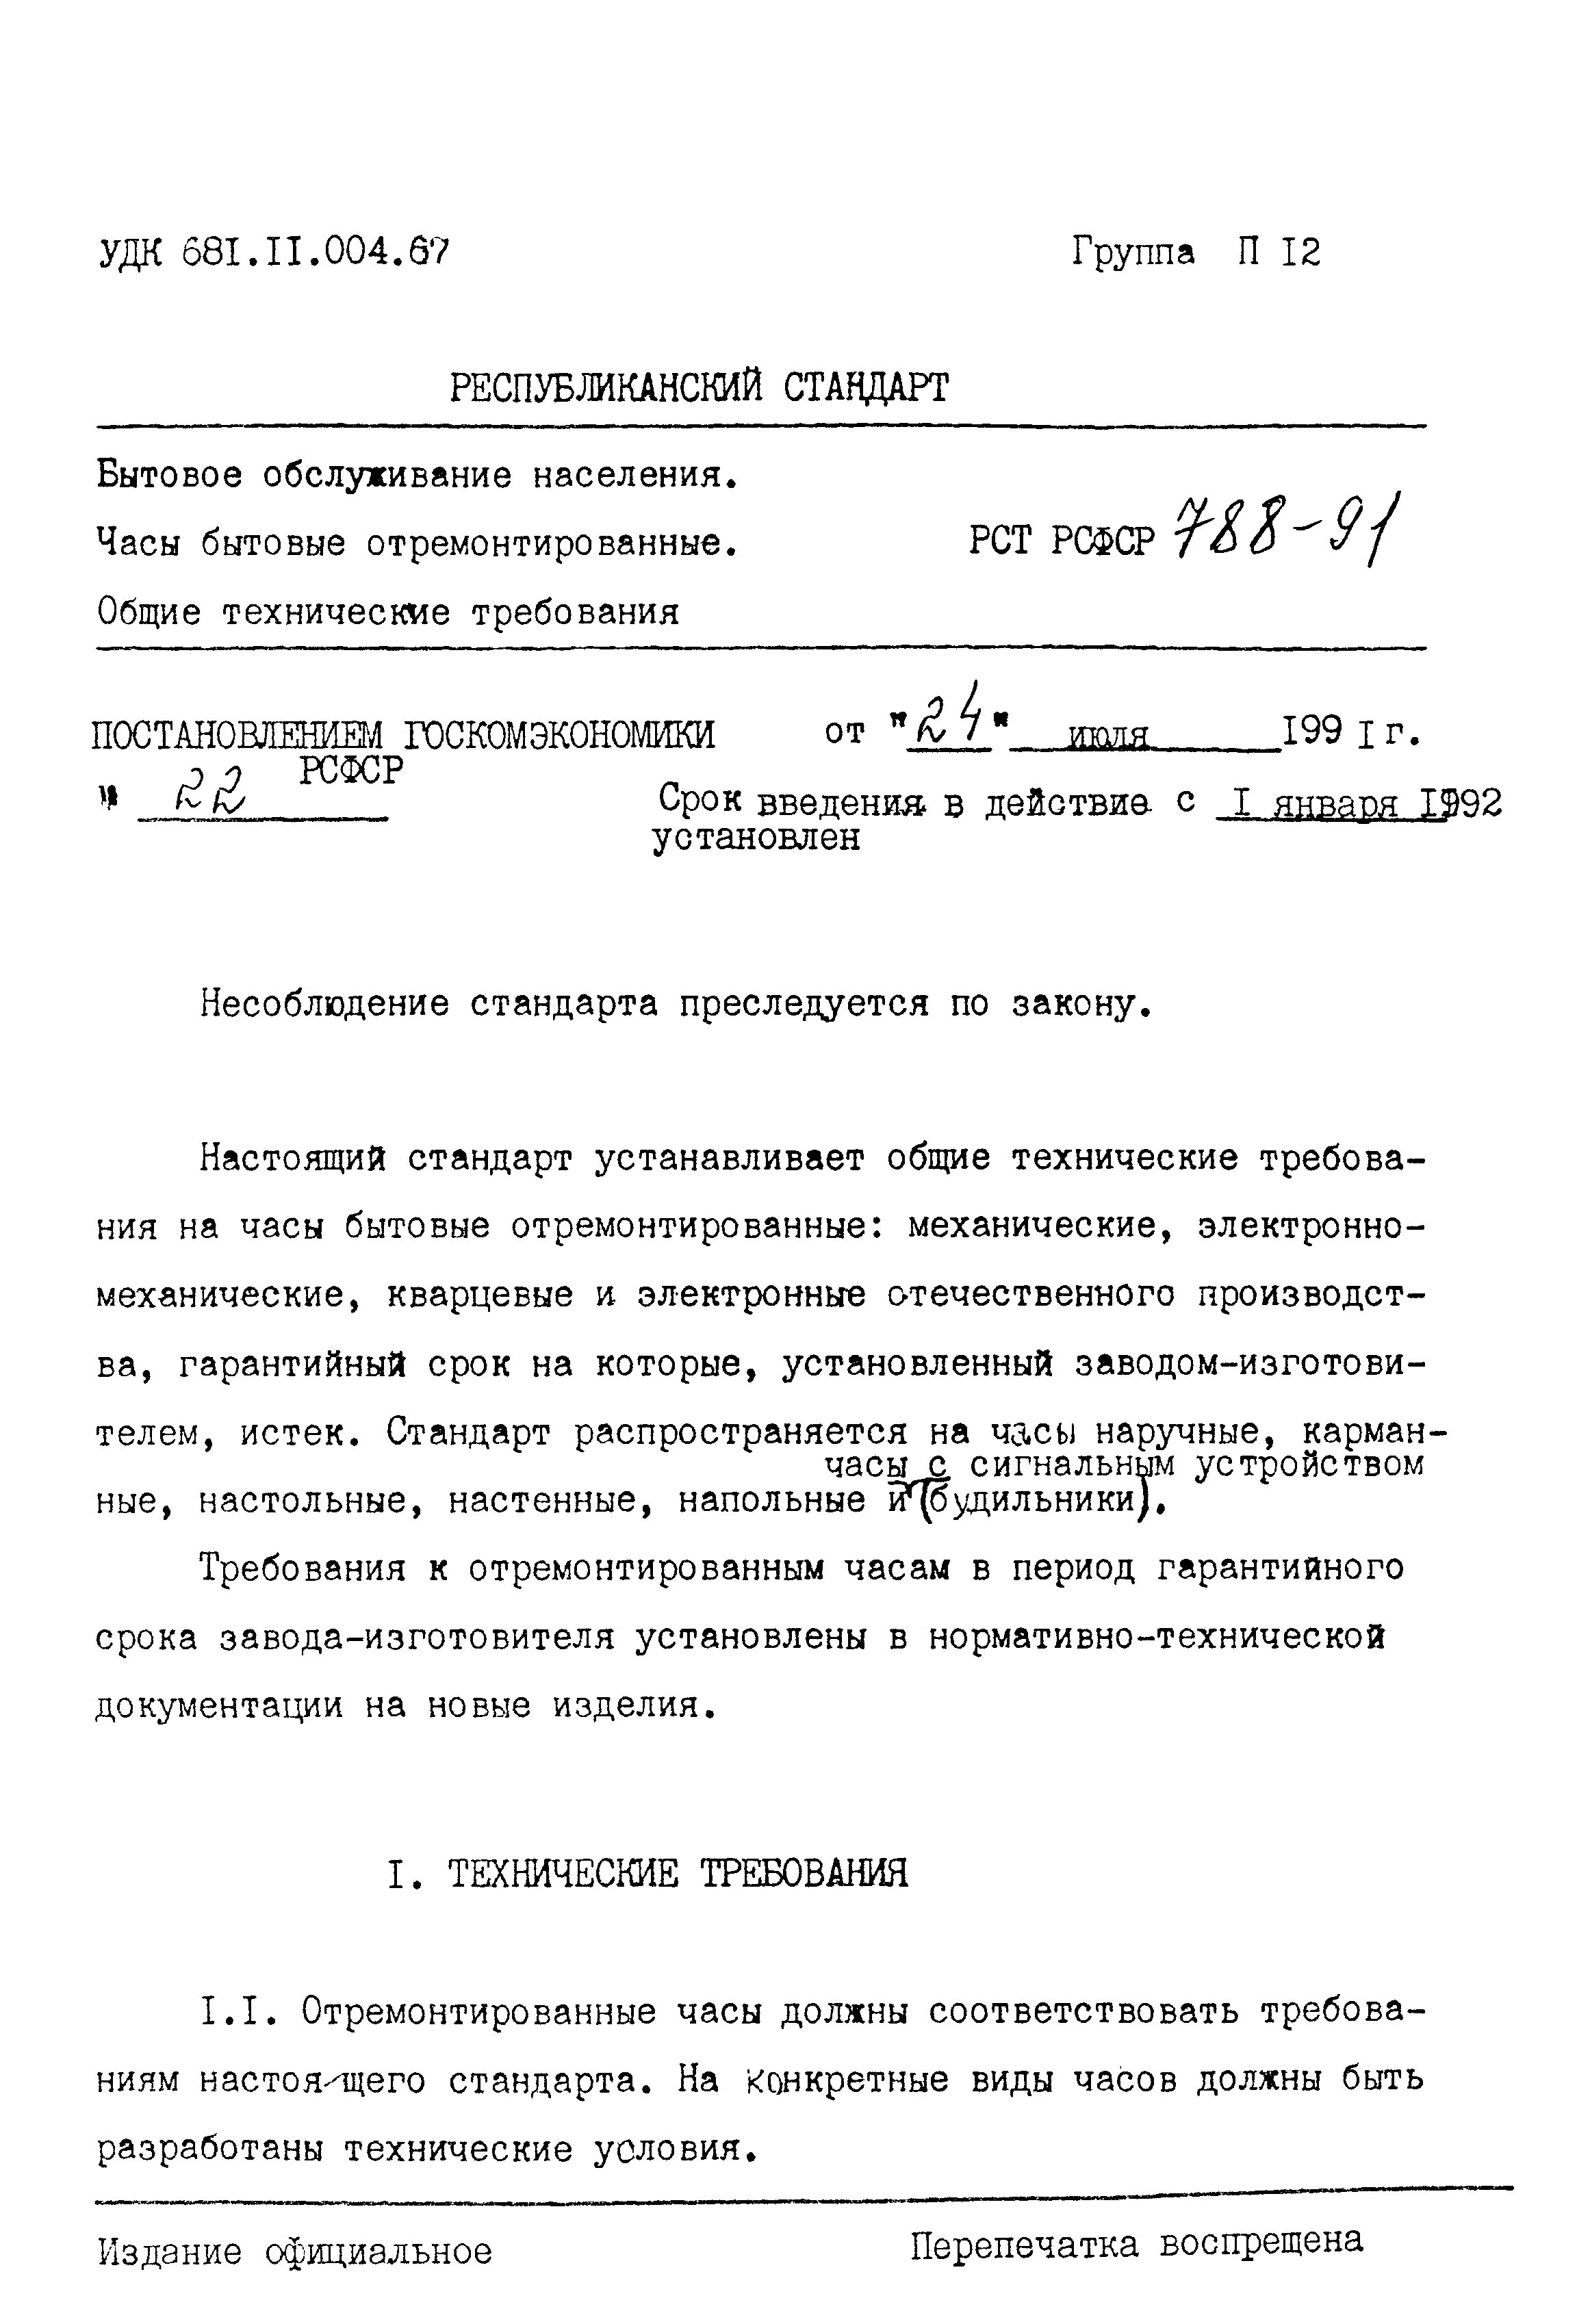 РСТ РСФСР 788-91